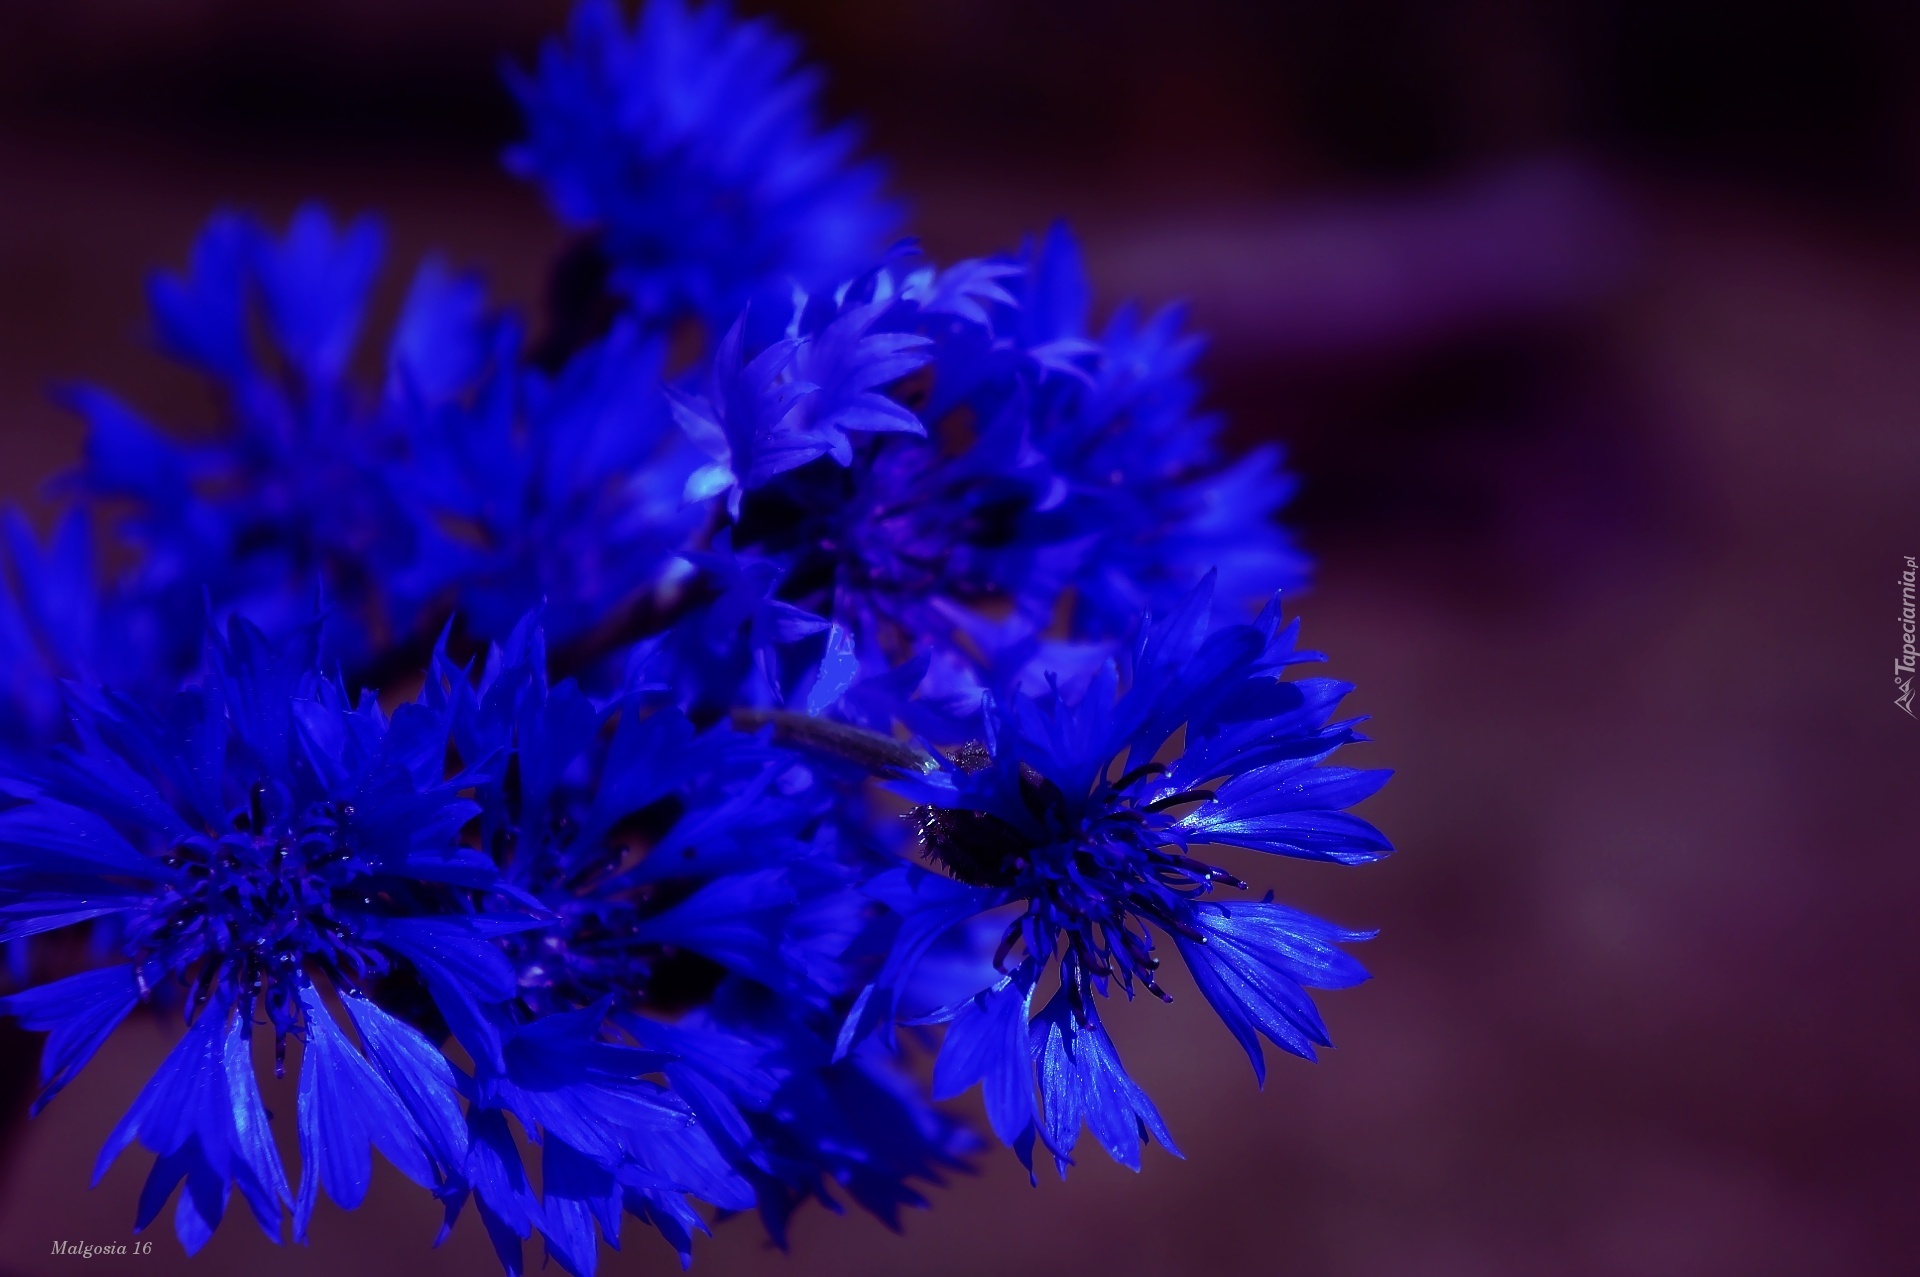 Kwiaty, Niebieskie, Chabry, Bukiet